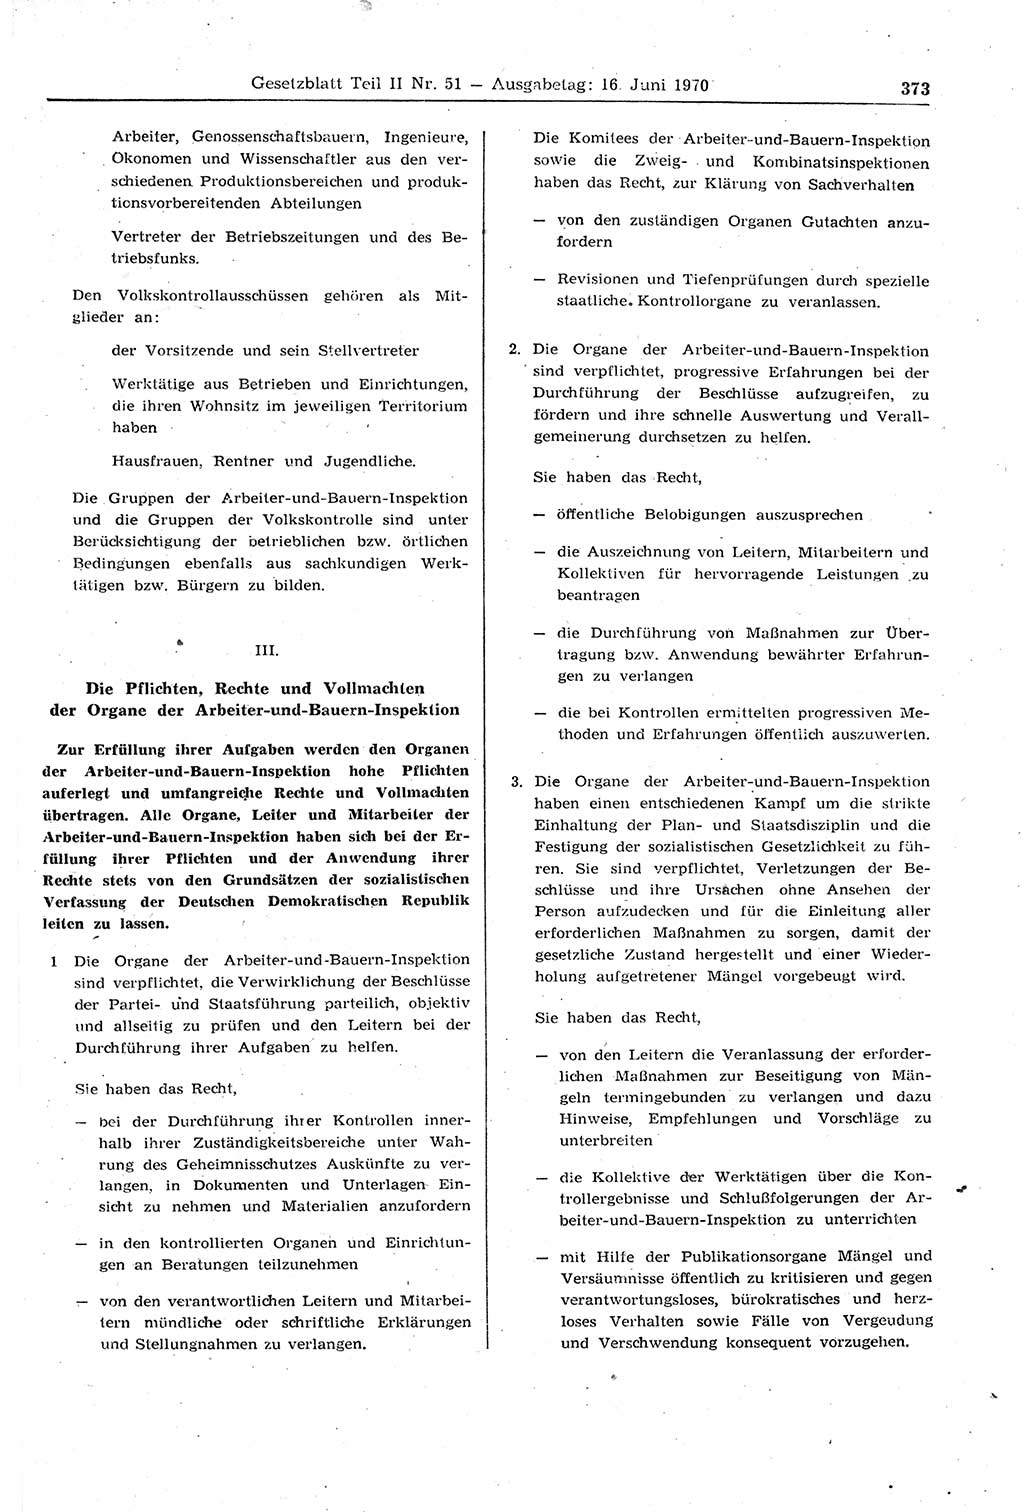 Gesetzblatt (GBl.) der Deutschen Demokratischen Republik (DDR) Teil ⅠⅠ 1970, Seite 373 (GBl. DDR ⅠⅠ 1970, S. 373)